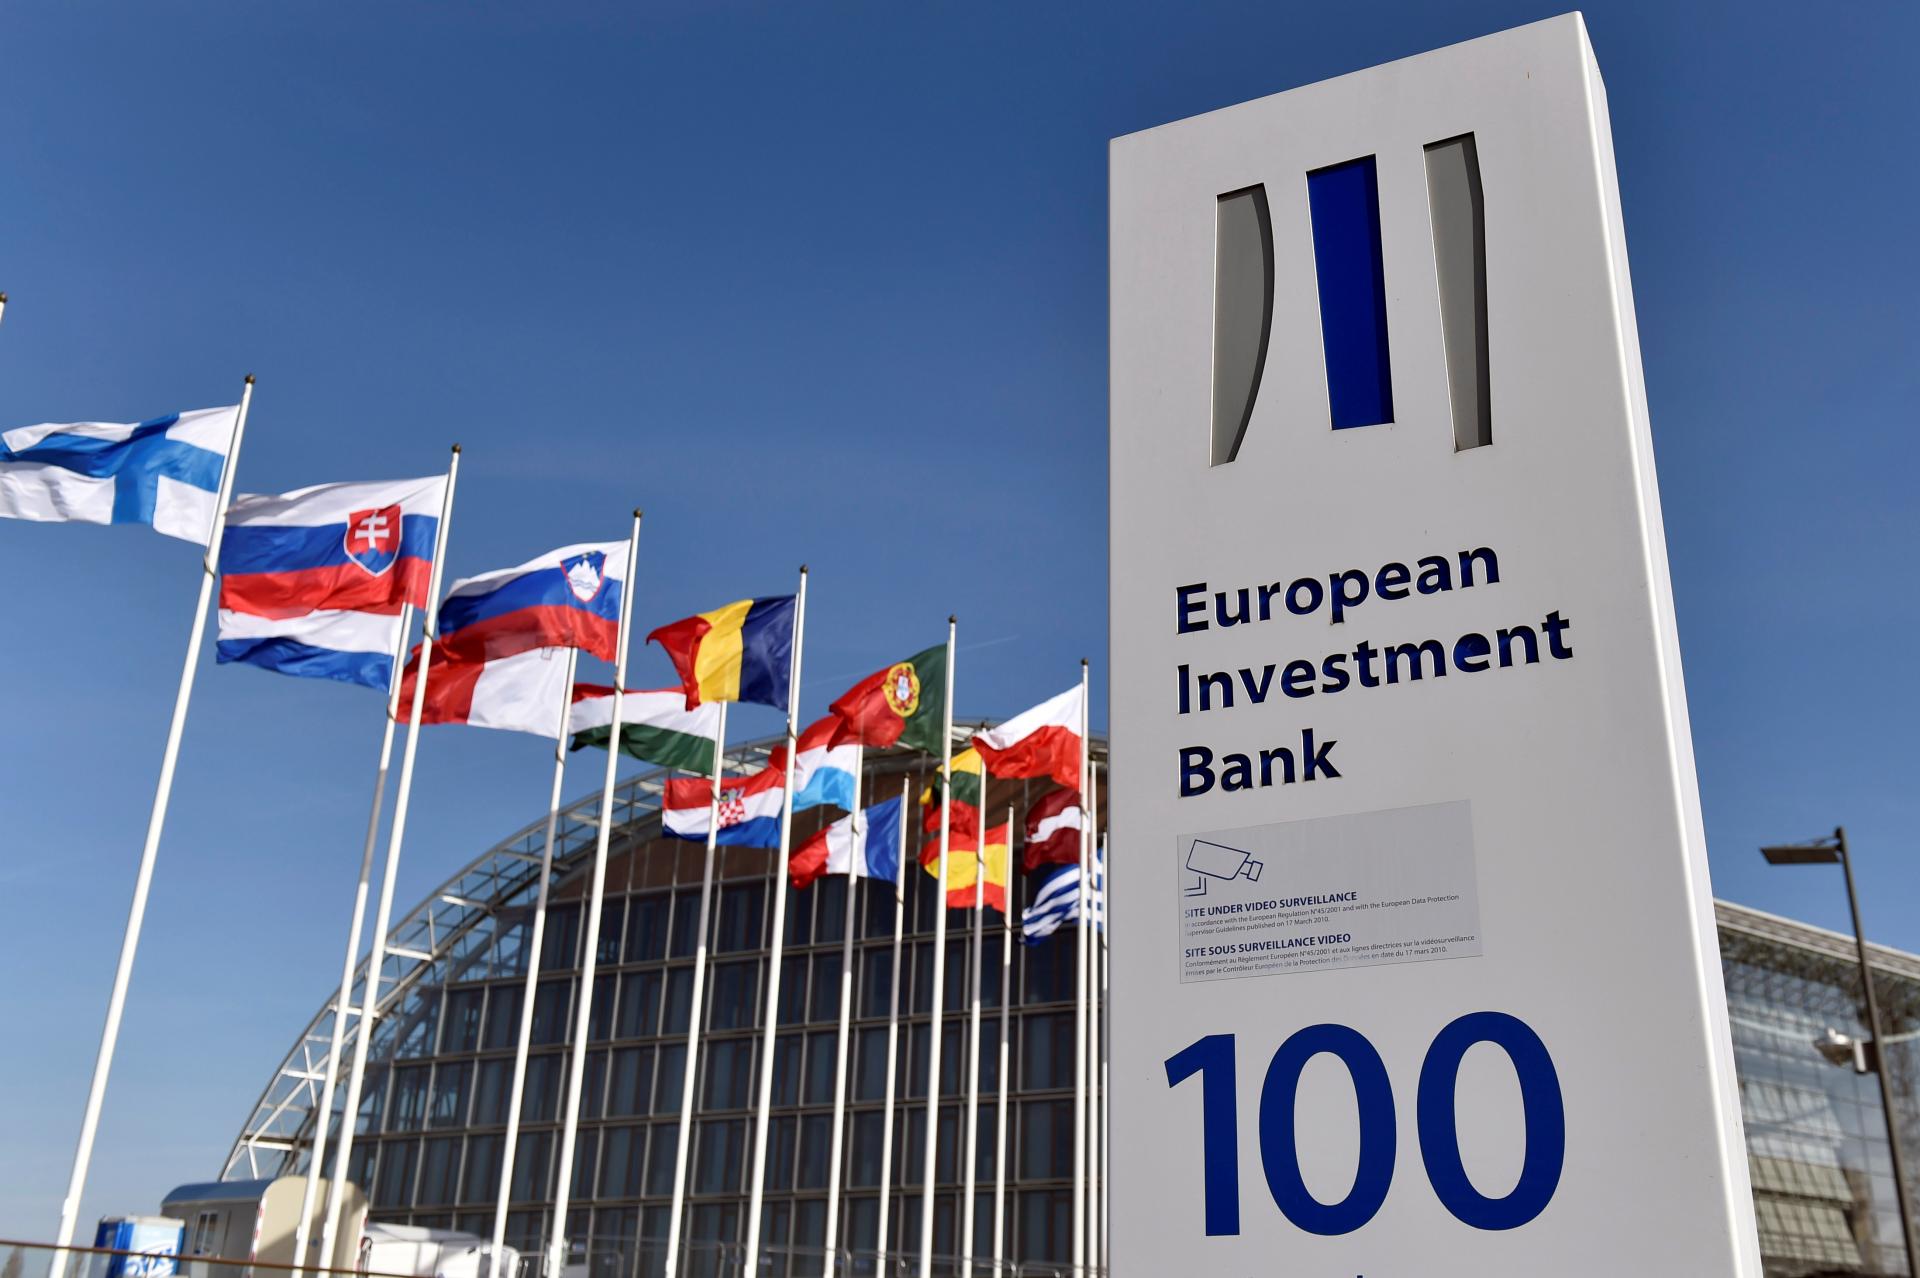 Vláda predĺžila termíny zúčtovania v dvoch úverových zmluvách s Európskou investičnou bankou